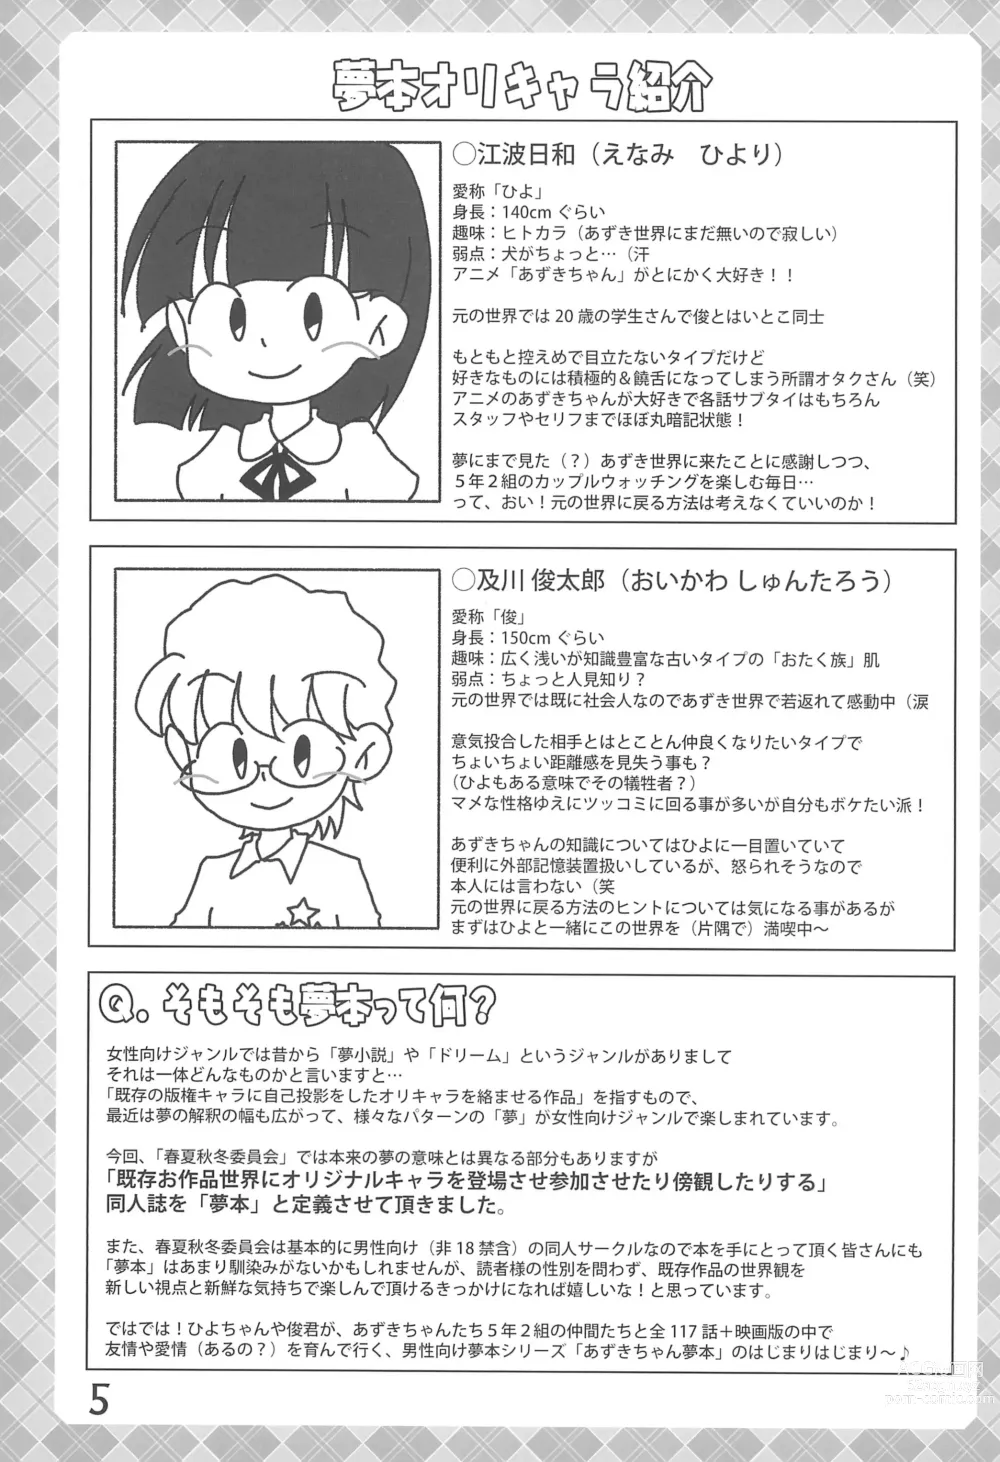 Page 5 of doujinshi Tama ni wa ii janai ka?